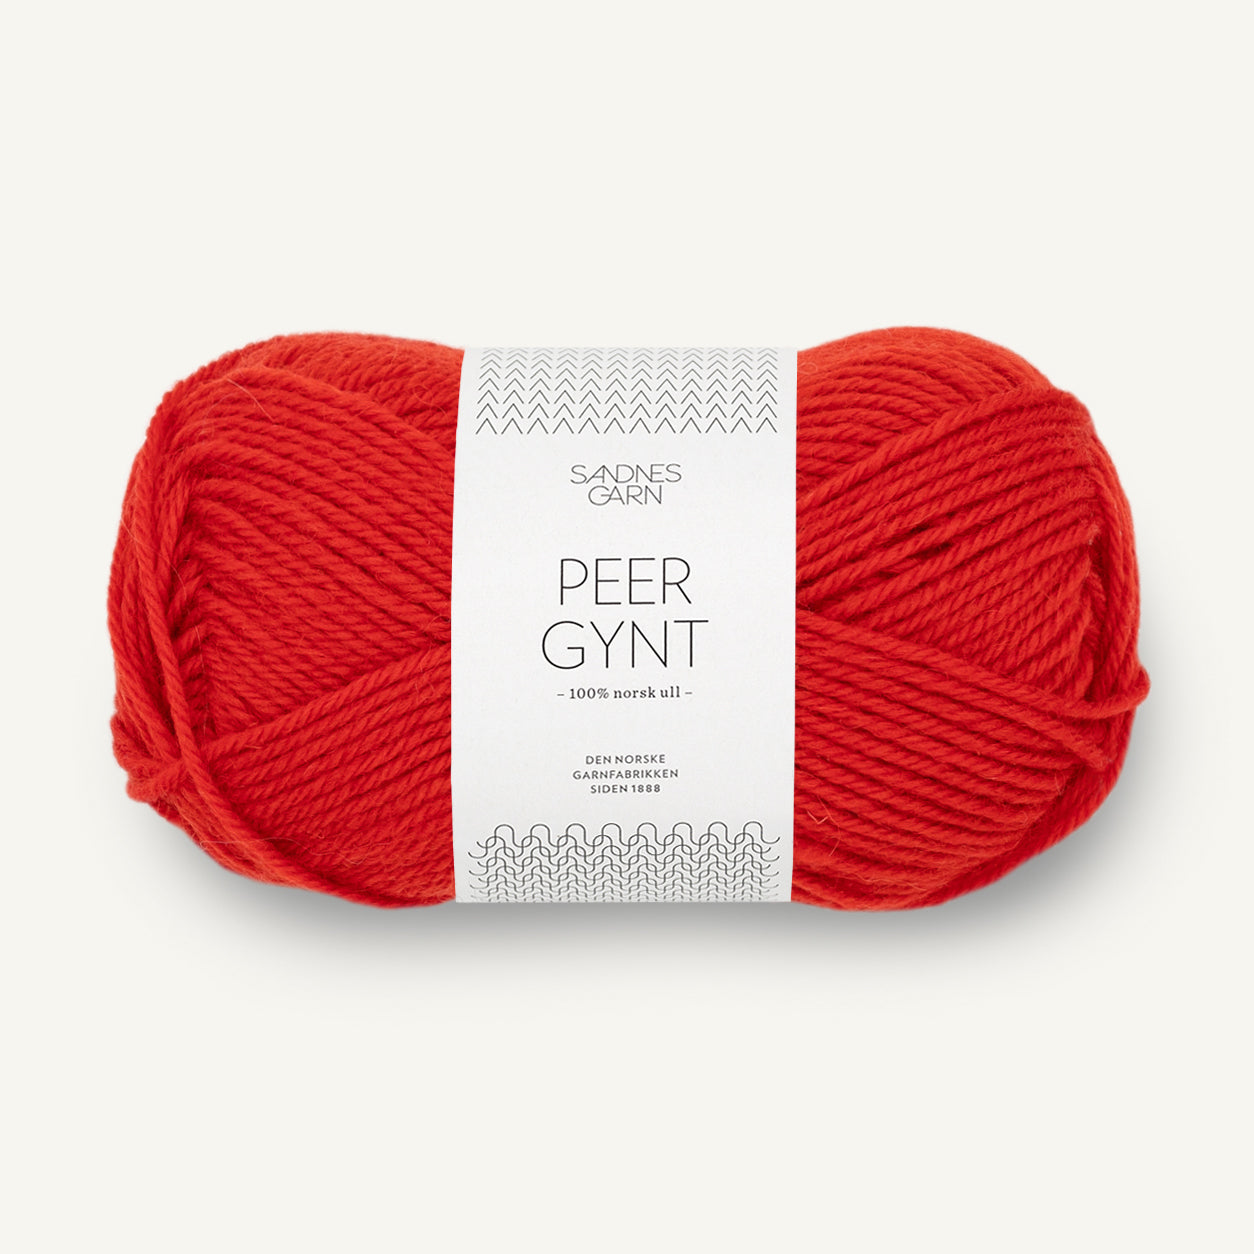 Peer Gynt scarlet red [4018]